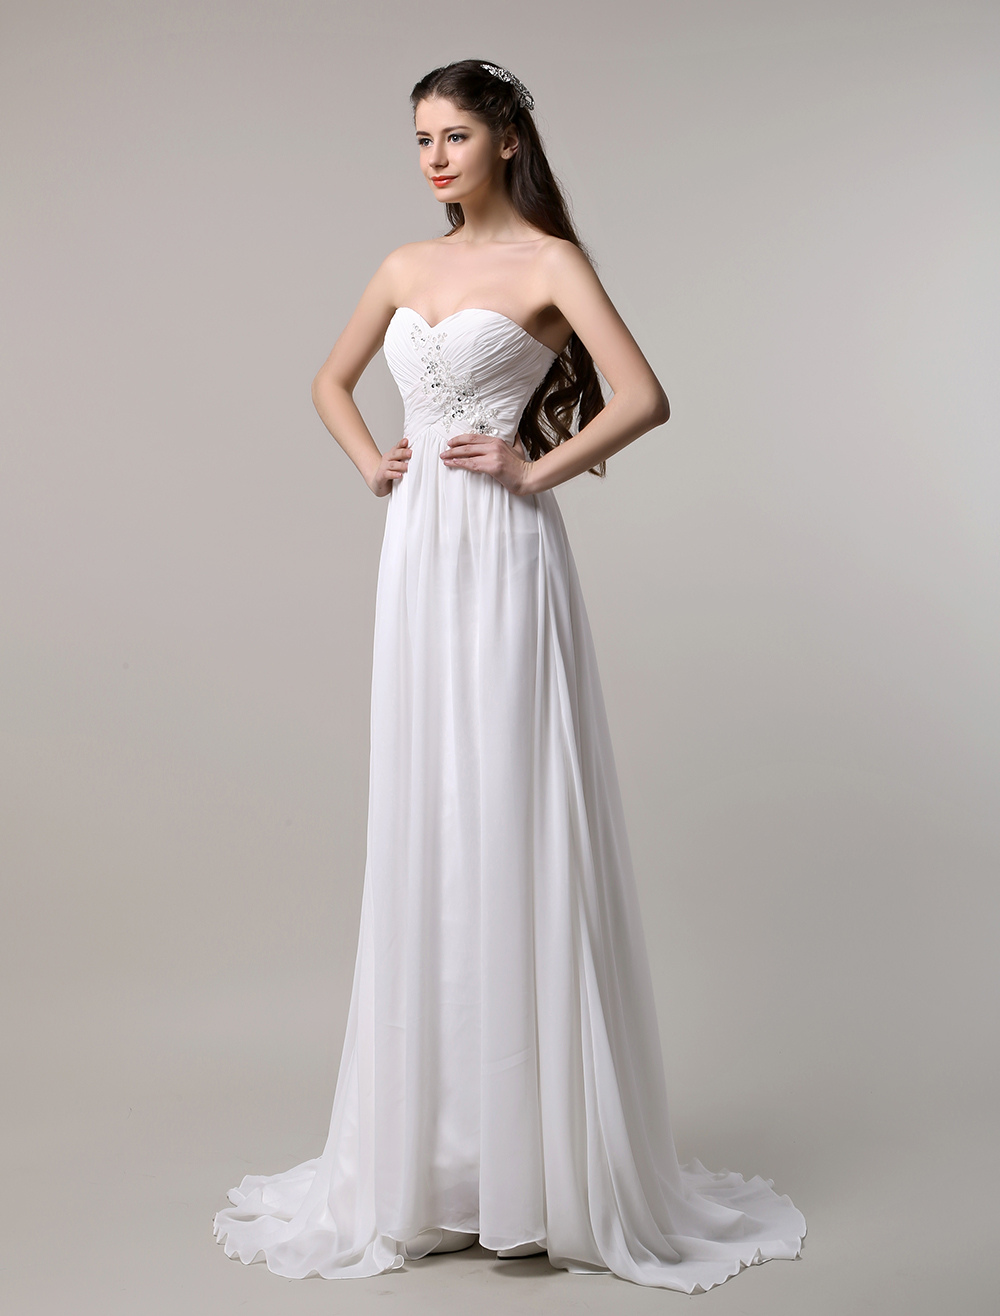 Ivory Chiffon Applique Beading Wedding Dress - Milanoo.com